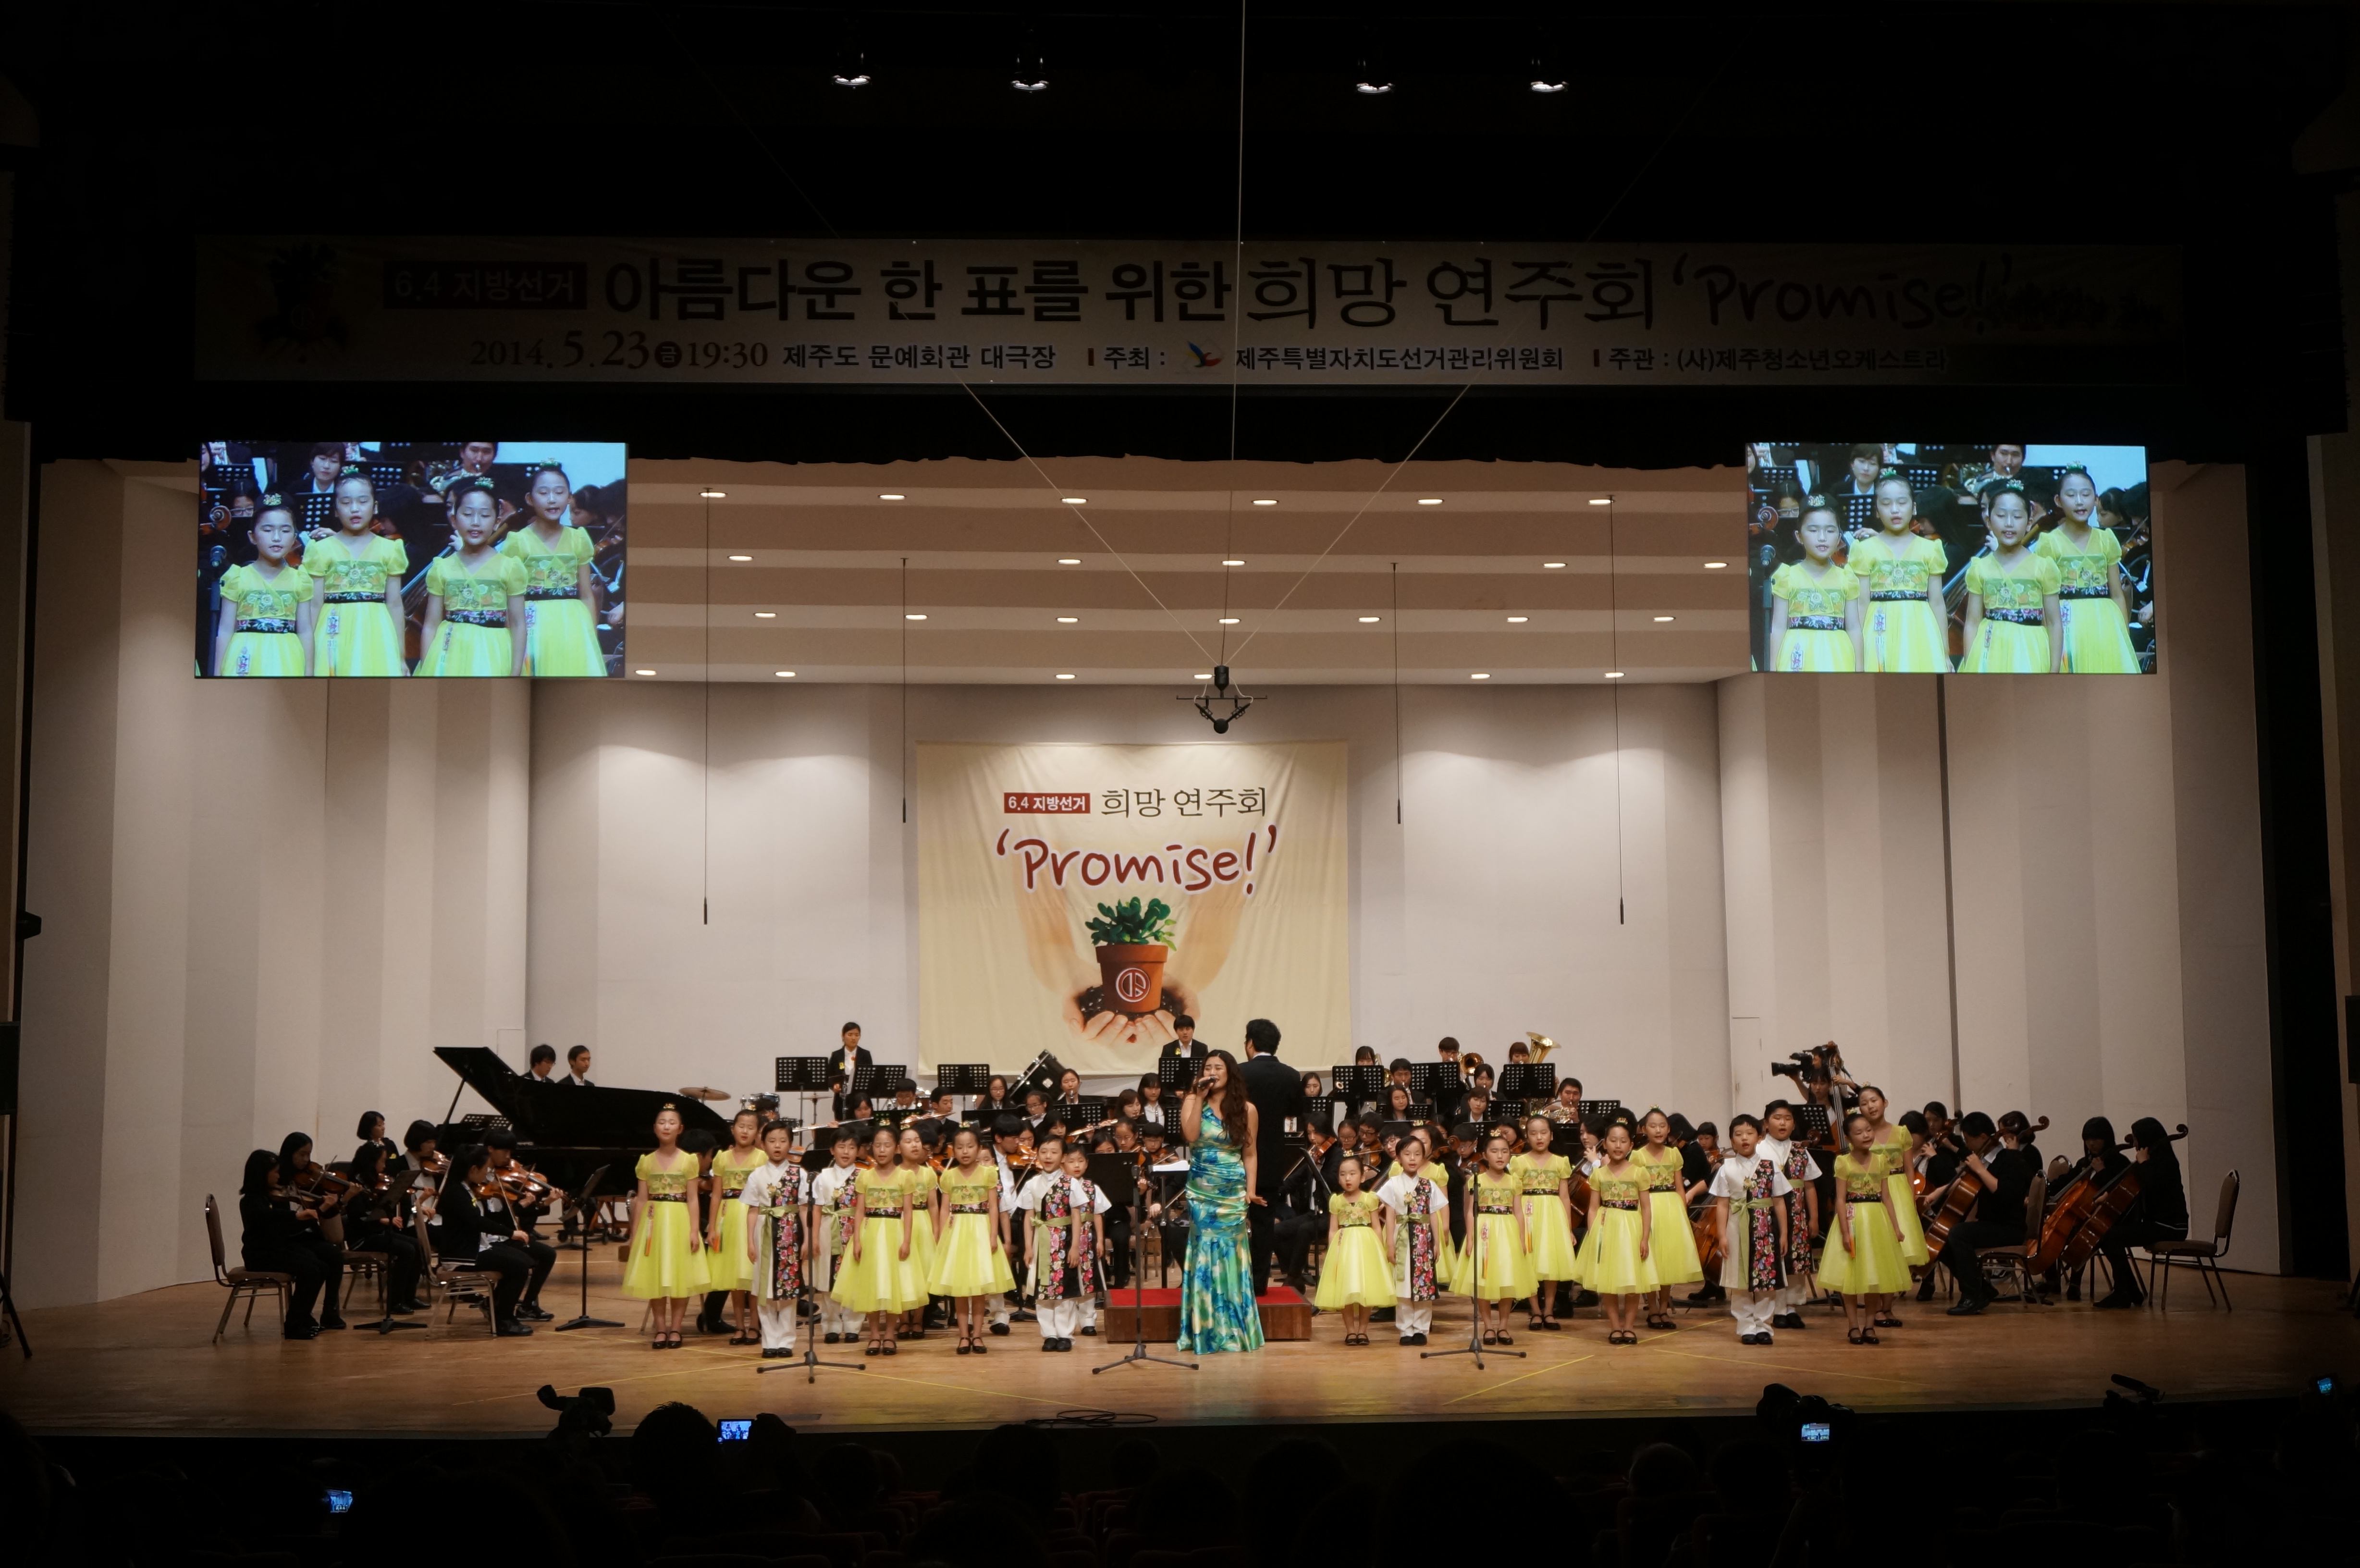 아름다운 한 표를 위한 희망연주회에서 청소년오케스트라와 어린이합창단 그리고 소프라노 강혜명 씨가 함께 공연을 하고 있다.